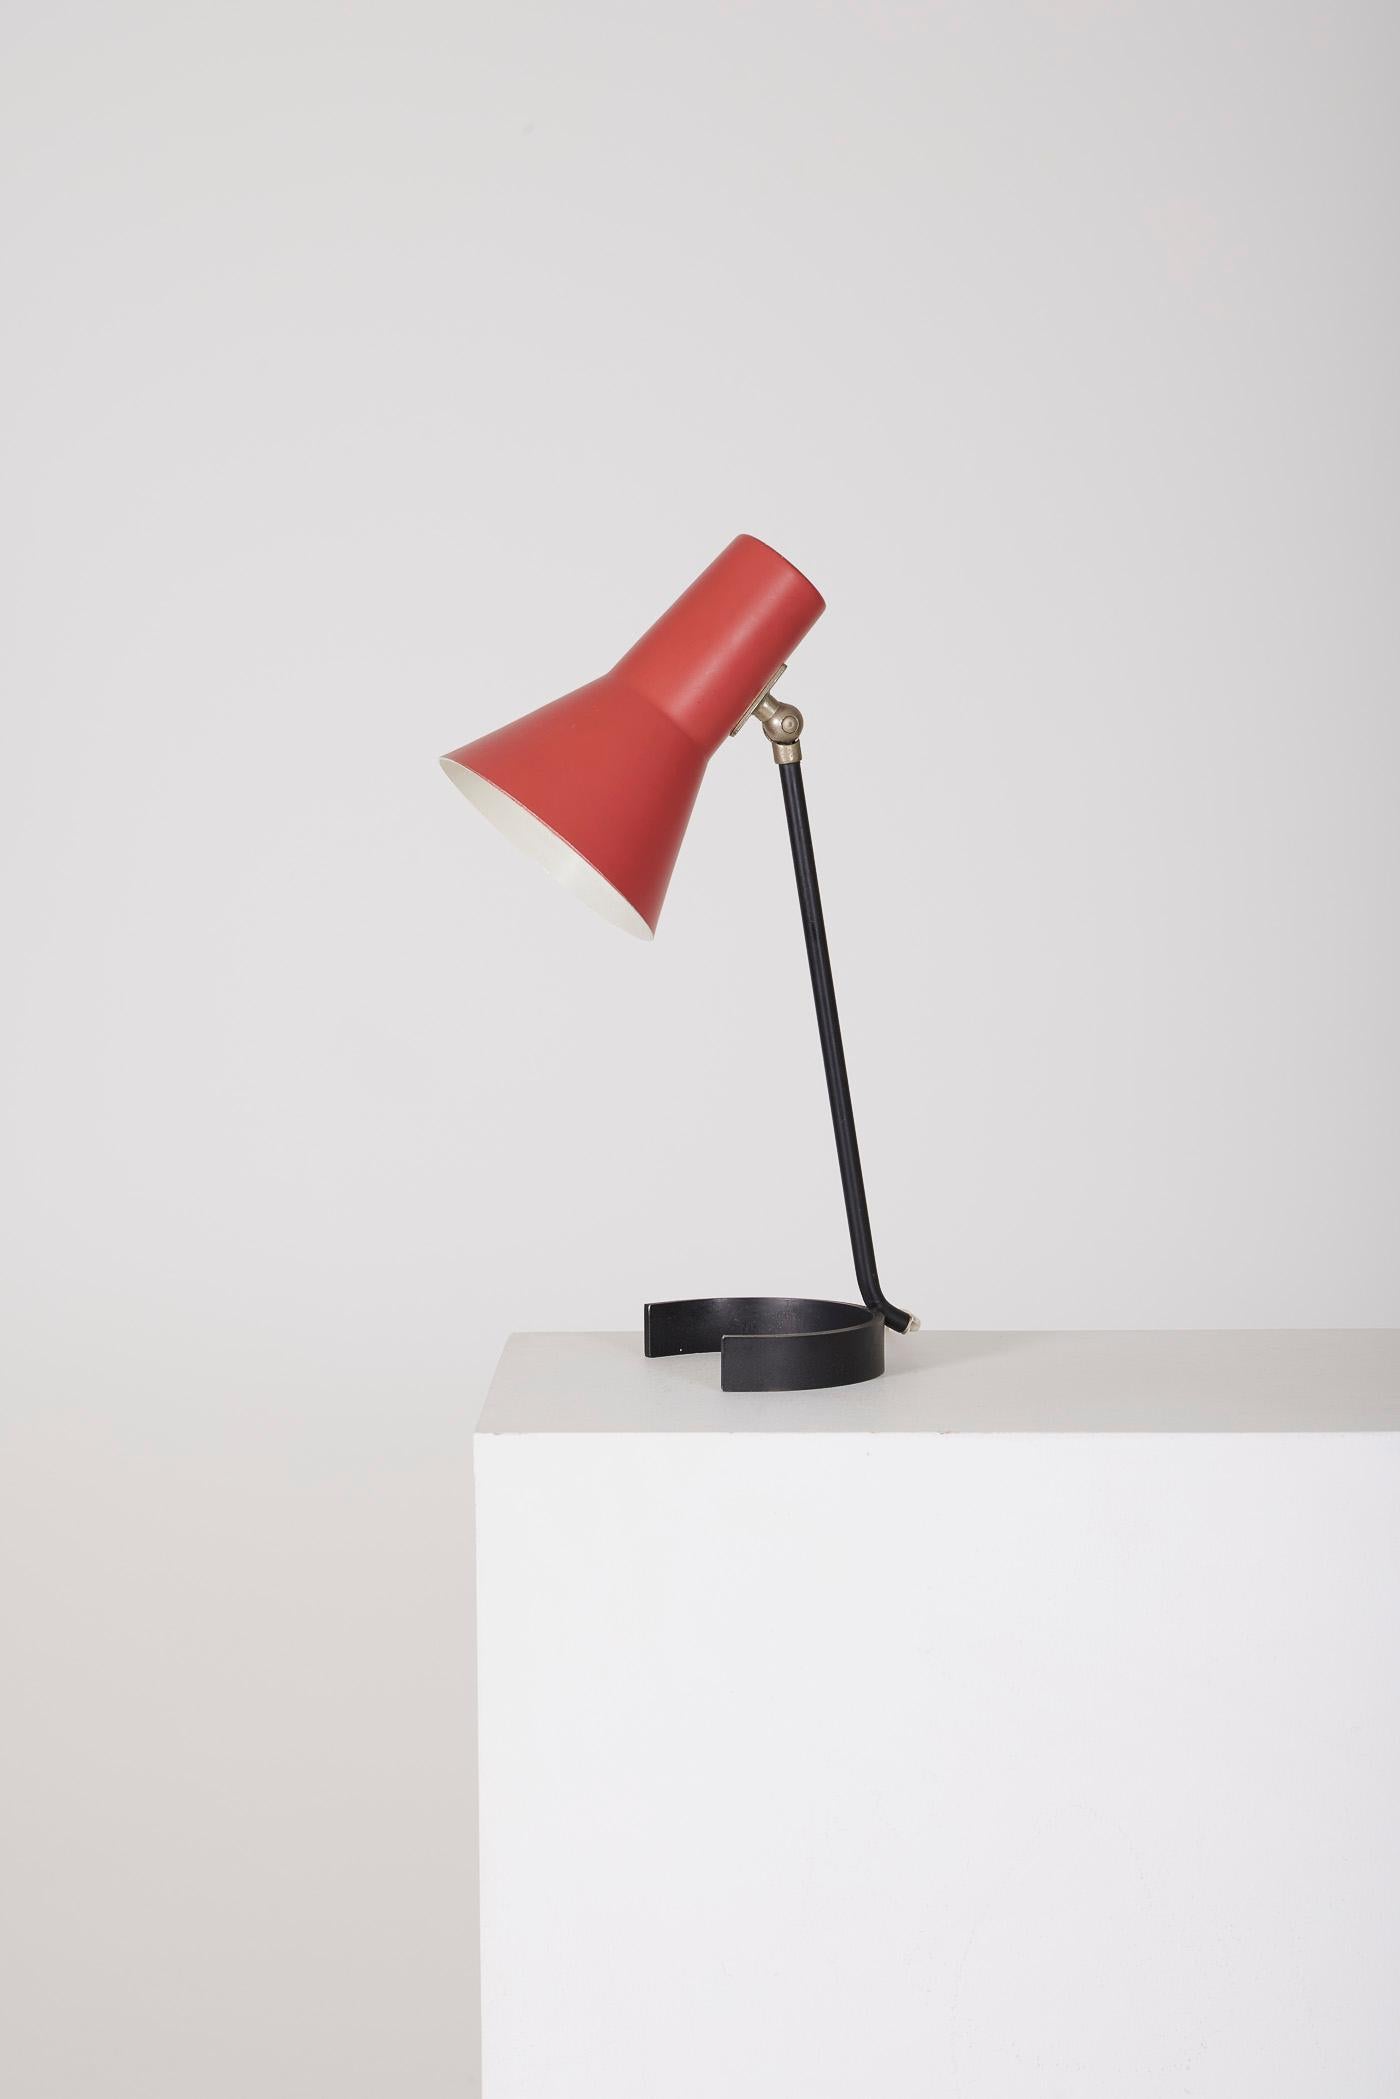  Metal lamp by Jan Hoogervorst For Sale 2